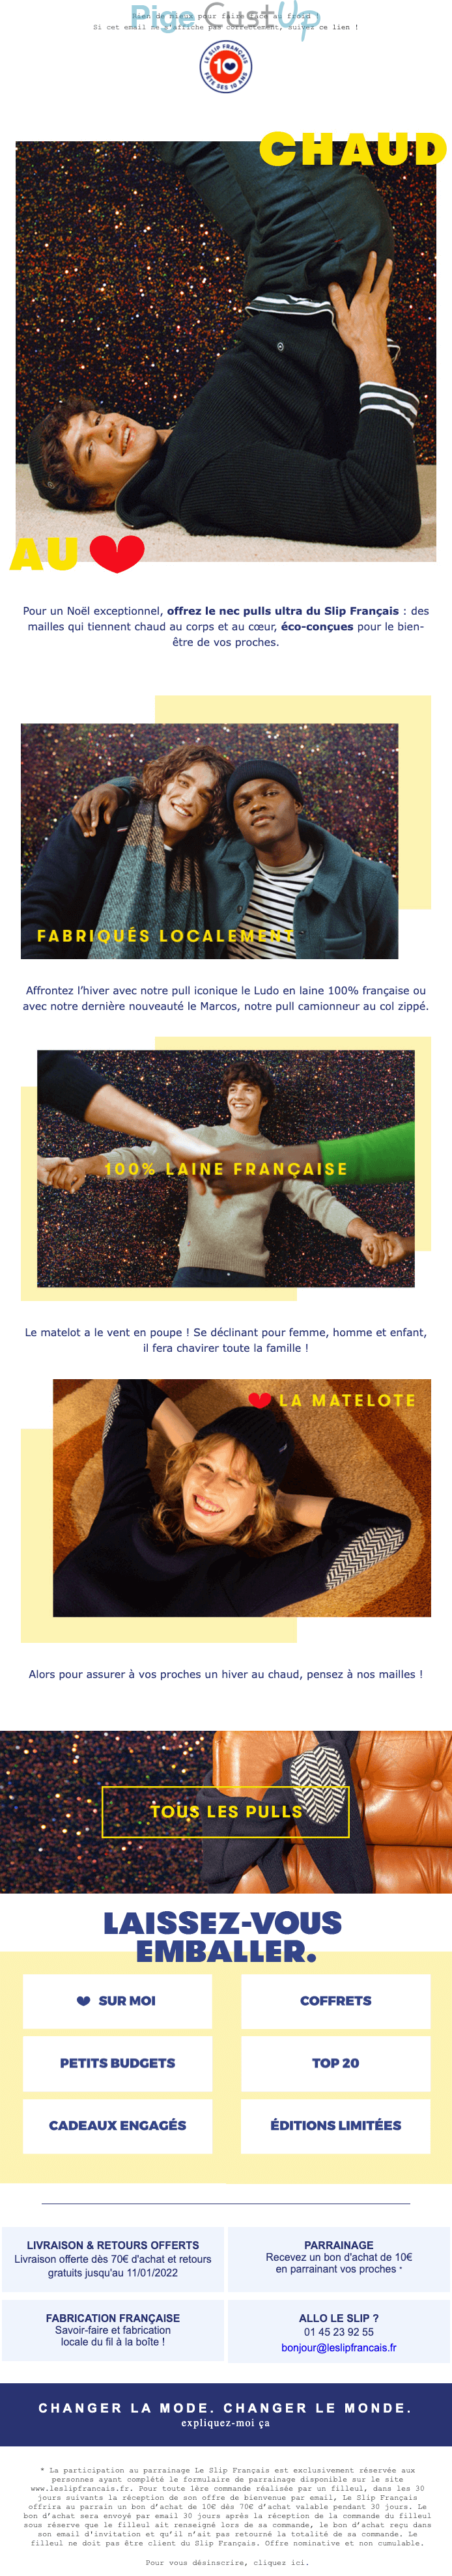 Exemple de Type de media   - Le slip français - Marketing relationnel - Newsletter